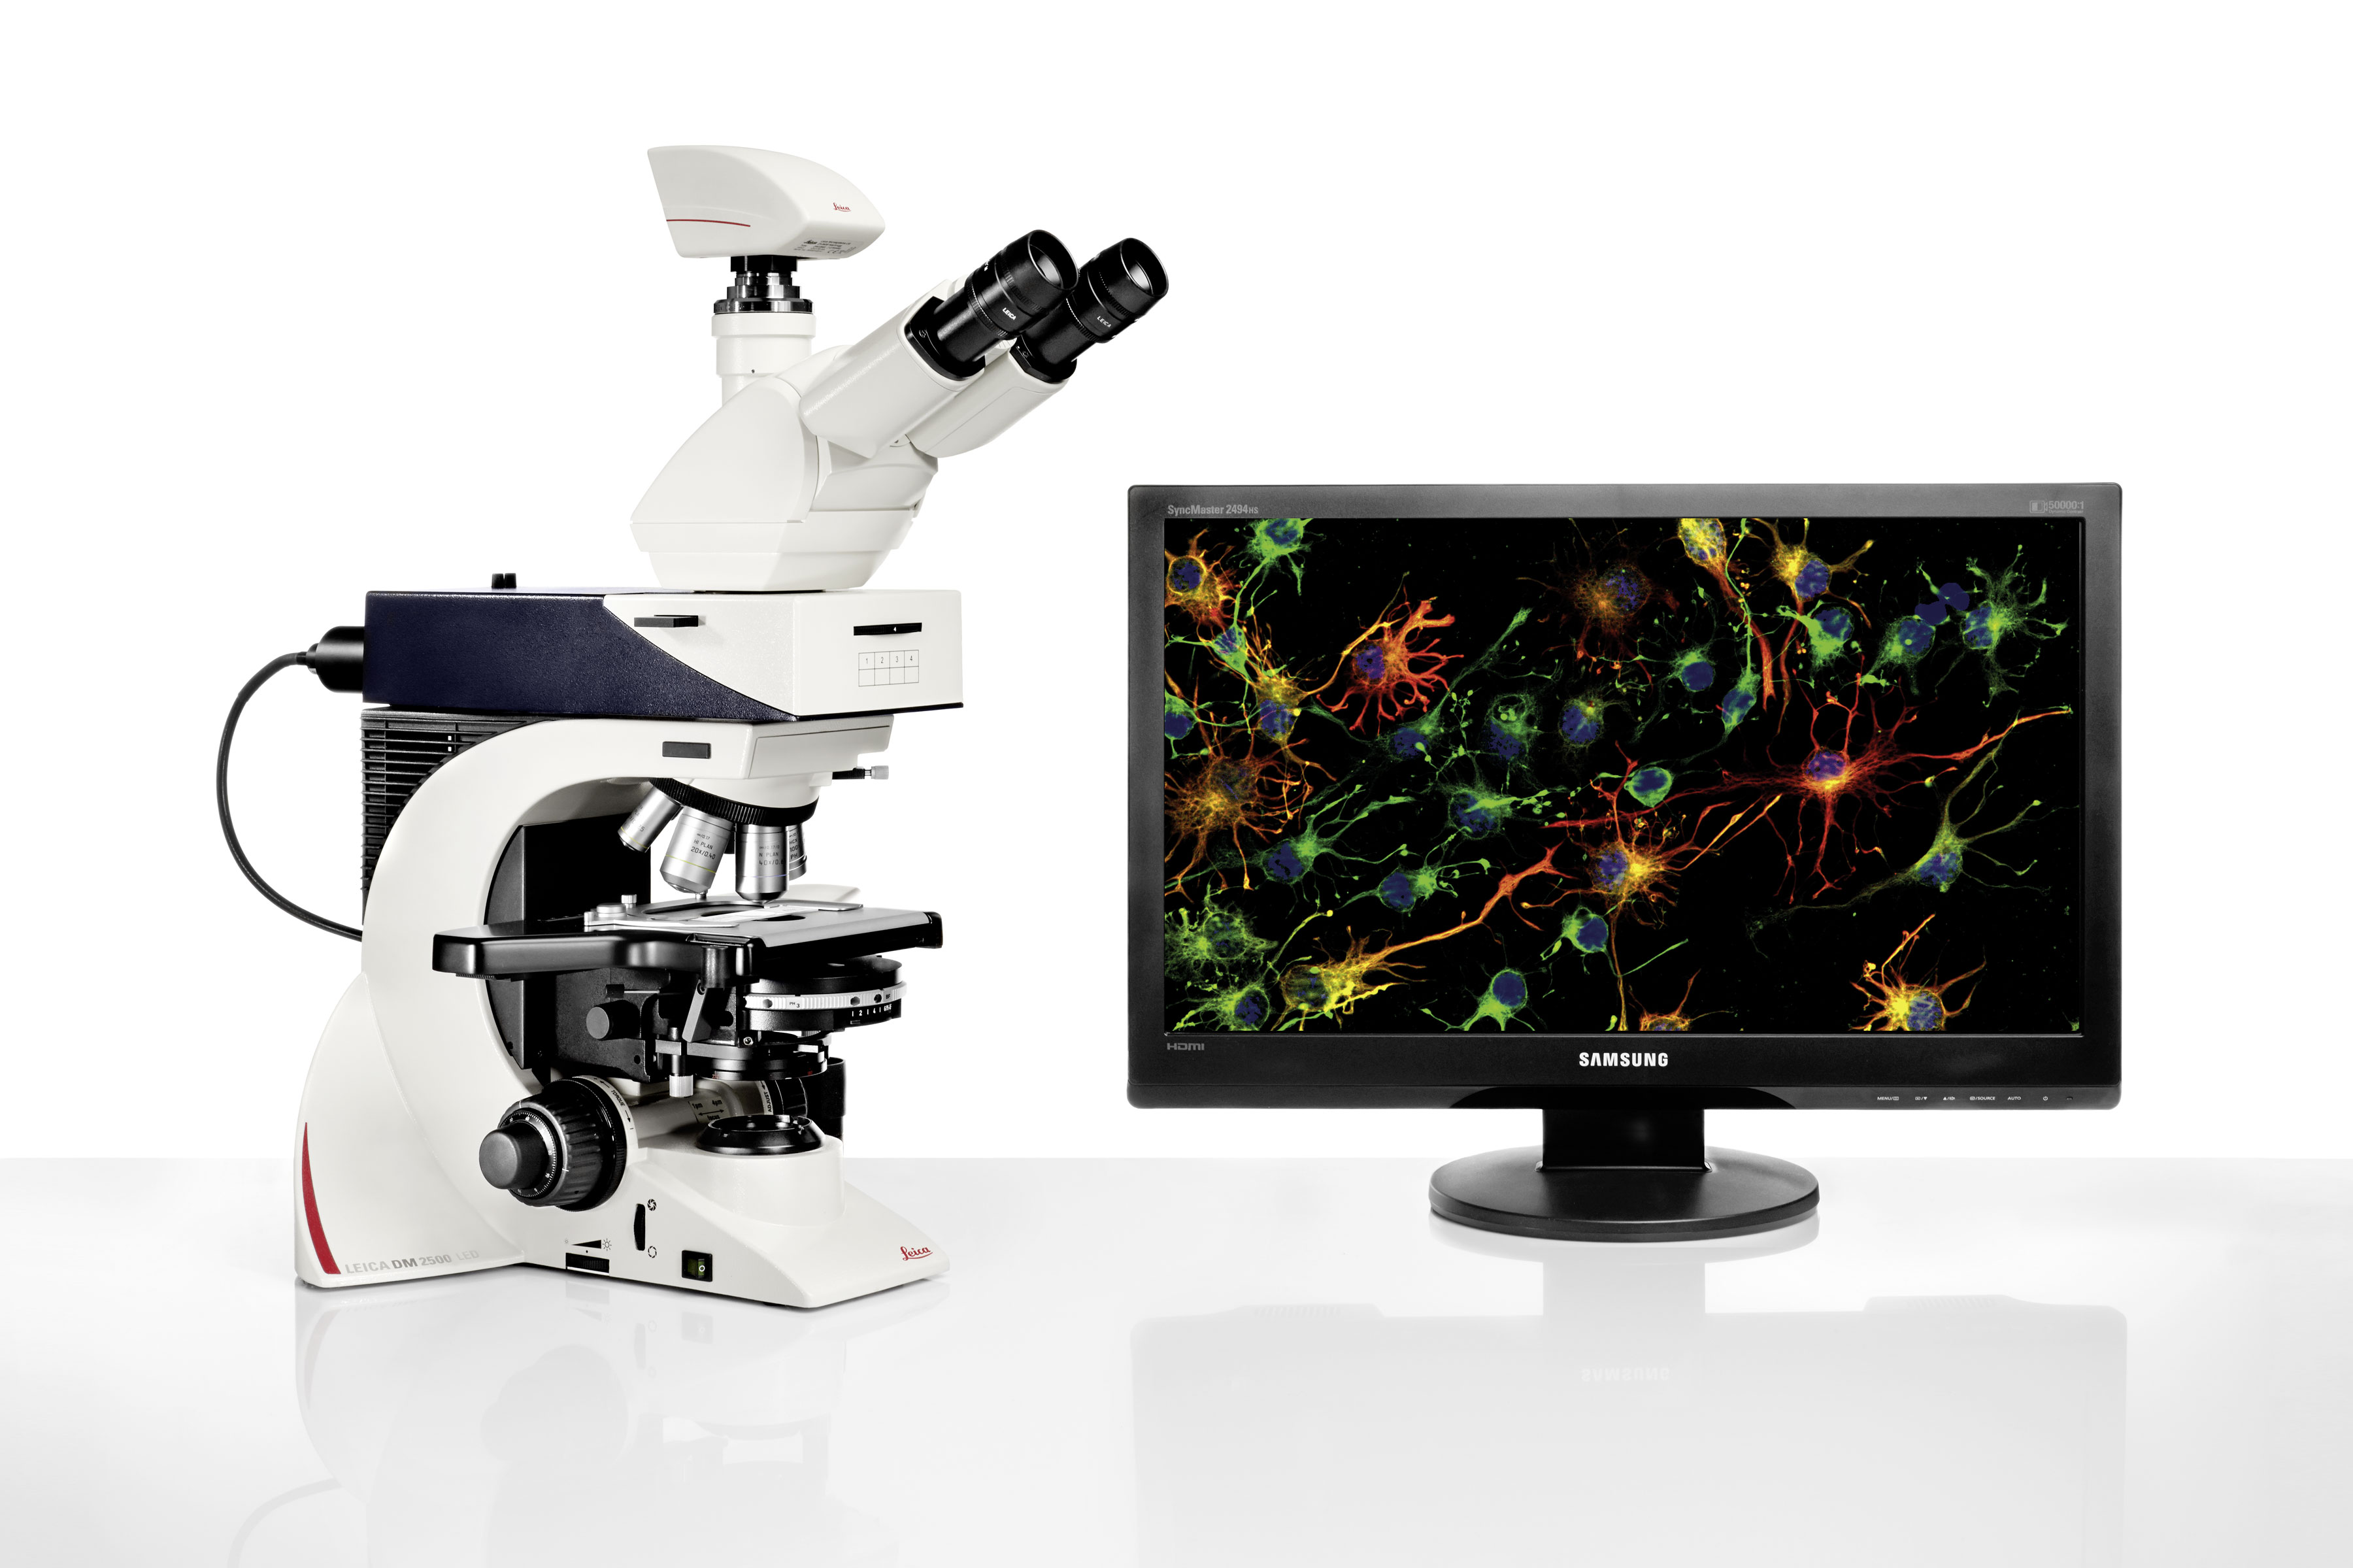 O sistema de microscópio excepcionalmente ergonômico Leica DM2500 LED com potente iluminação a LED é a ferramenta perfeita para as tarefas exigentes em aplicações de ciências biológicas